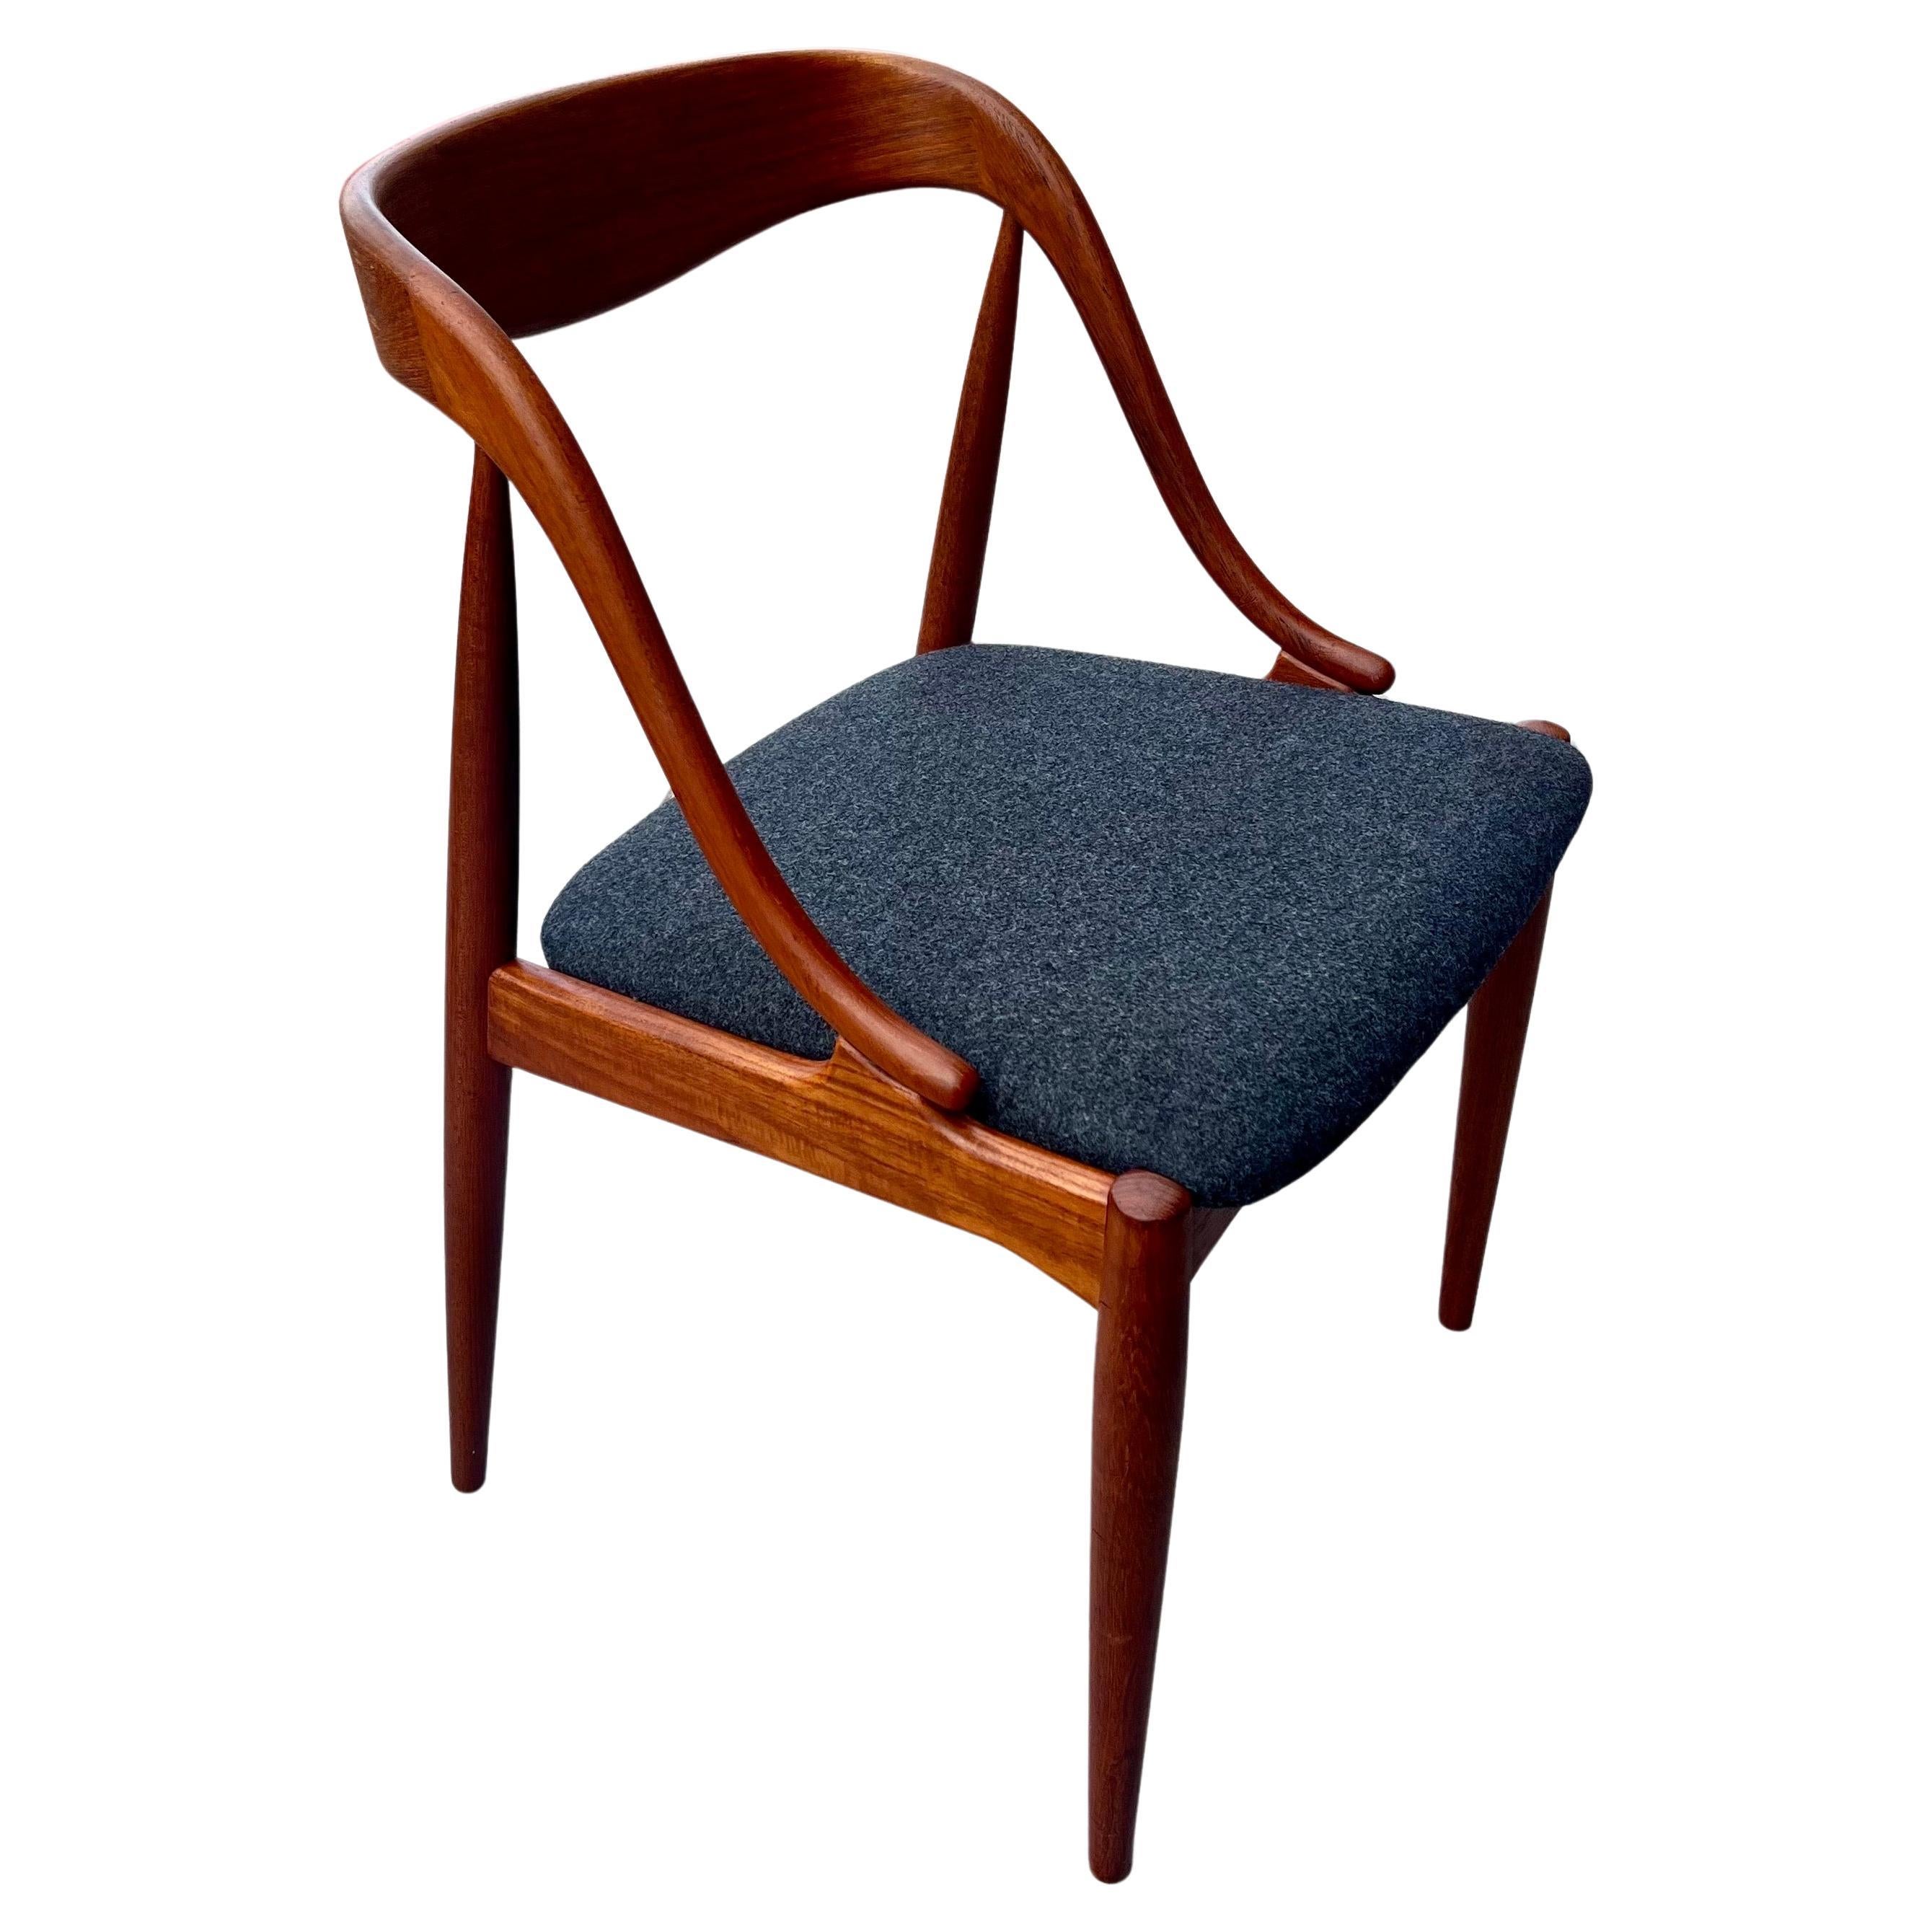 20th Century Danish Modern teak Model 16 Chair by Johannes Andersen for Uldum Mobler For Sale